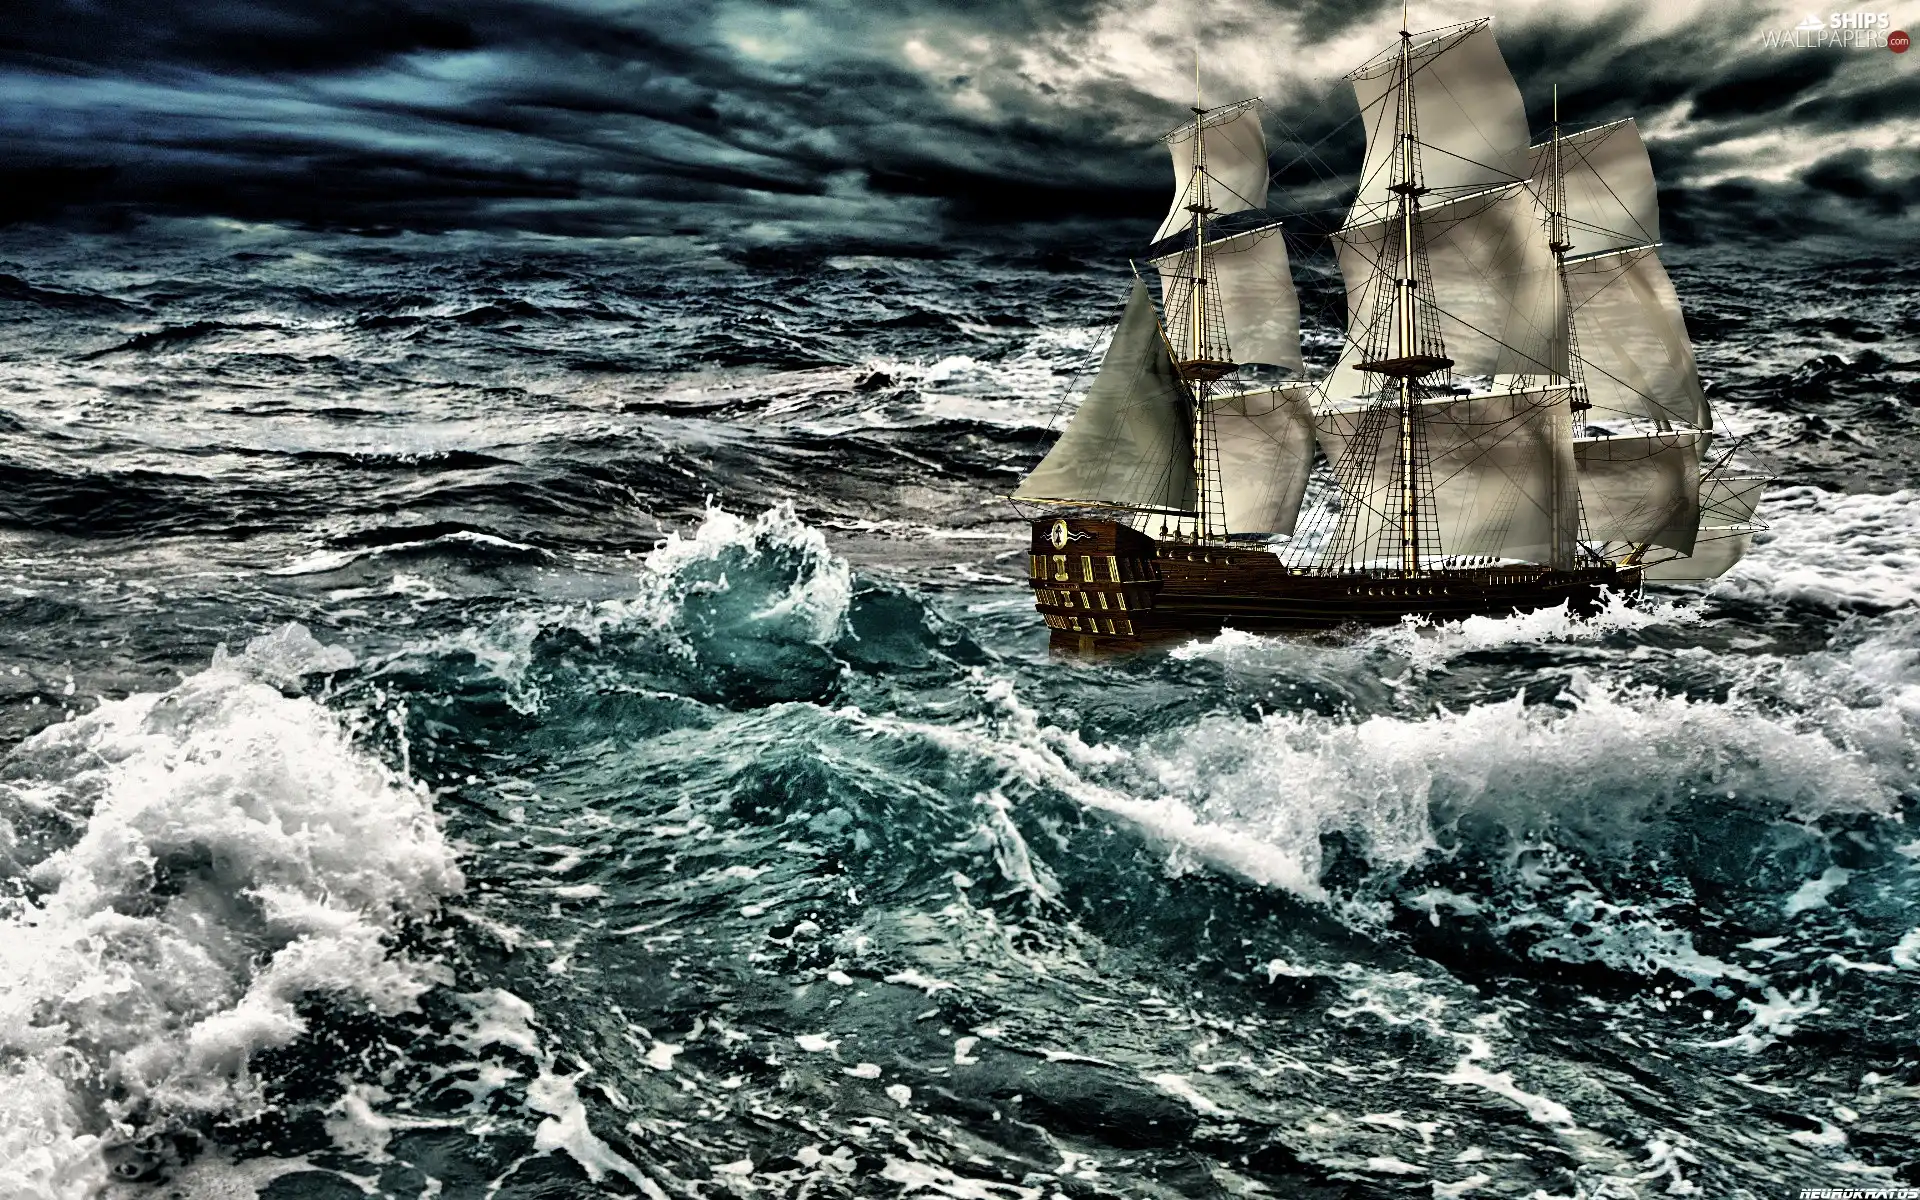 Storm, sailing vessel, sea